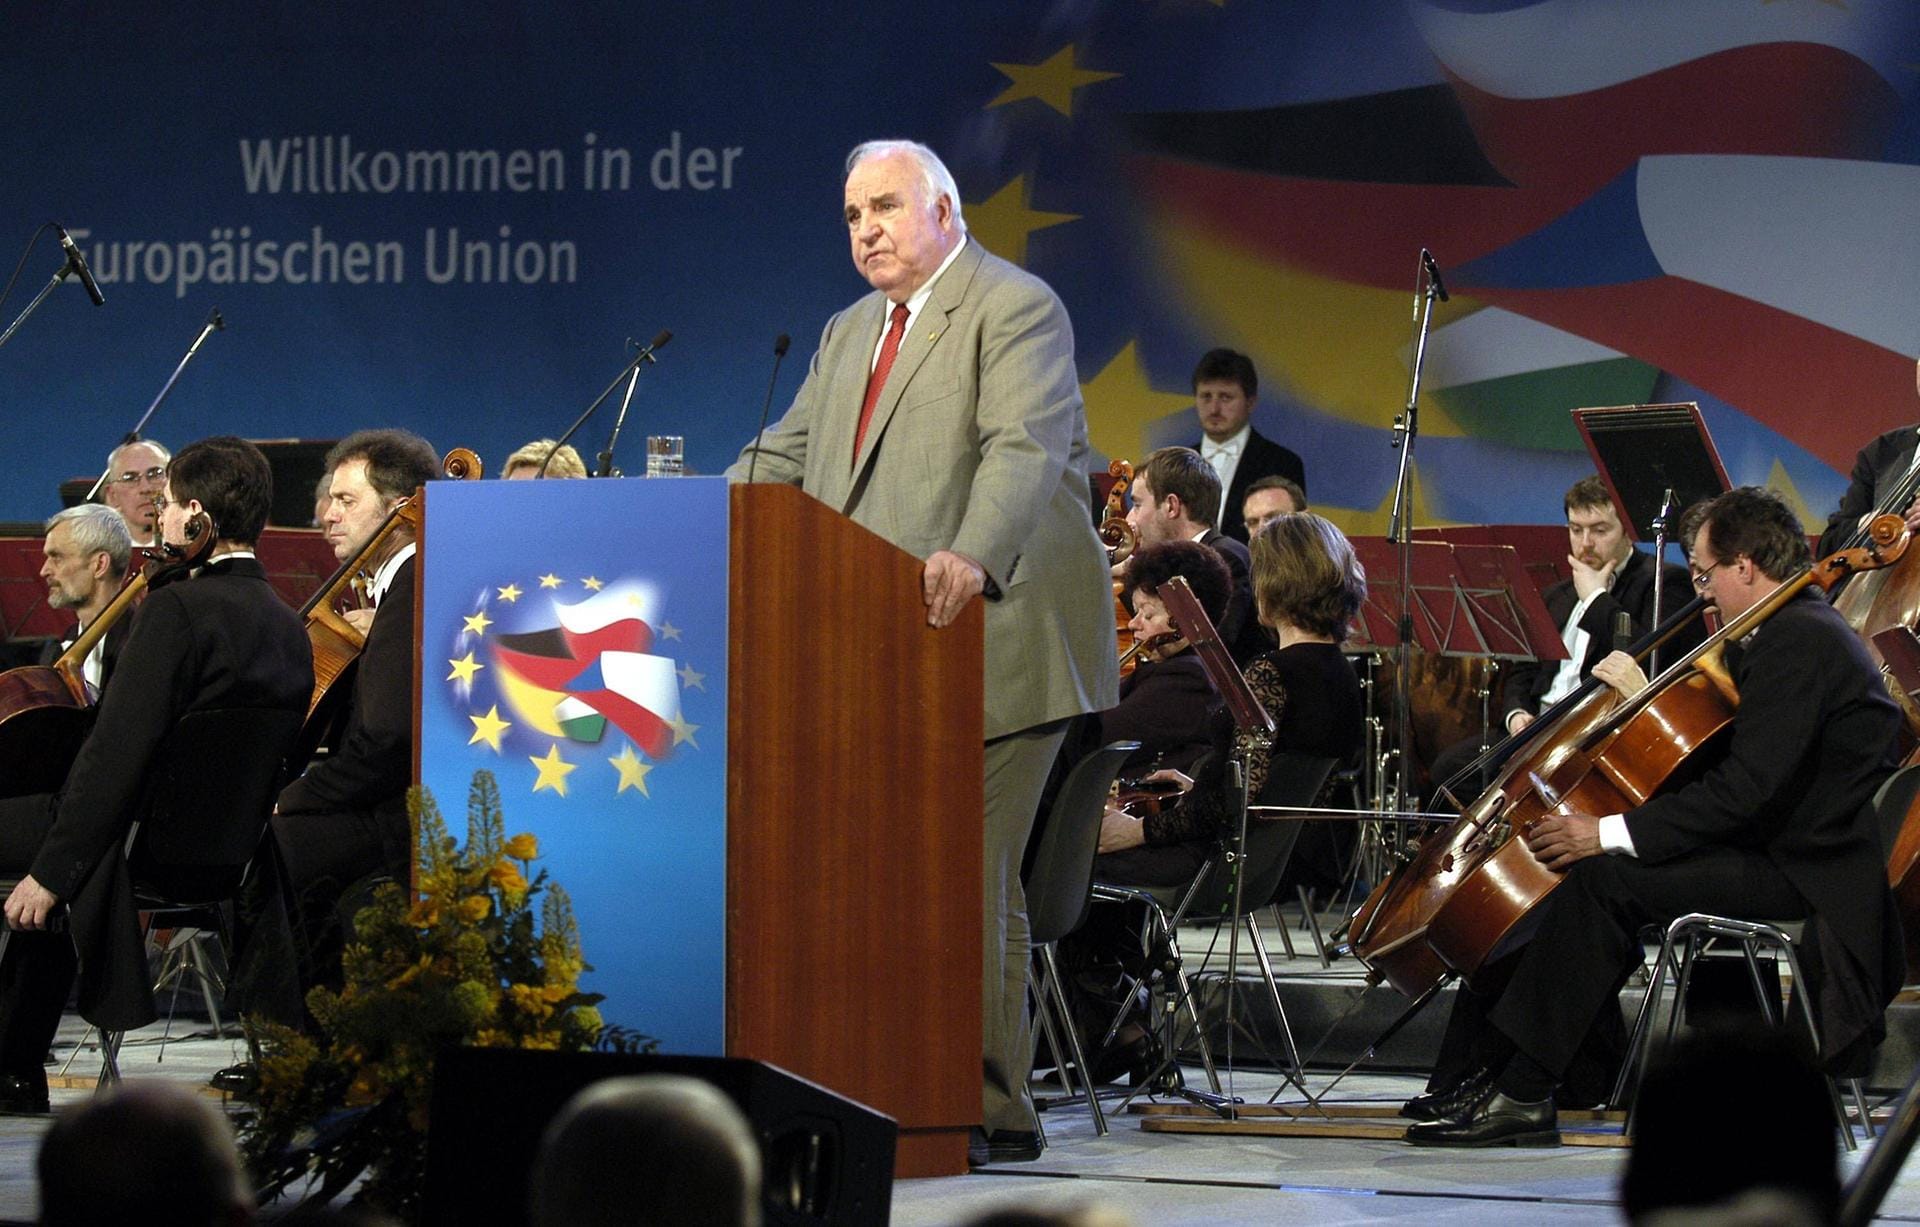 Auch Schröders Vorgänger, Helmut Kohl, nahm am 30. April 2004 an einer Feierstunde zur EU-Osterweiterung in Zittau teil. In seiner Amtszeit wurde die Erweiterung der EU nach Osten im Wesentlichen vorbereitet.